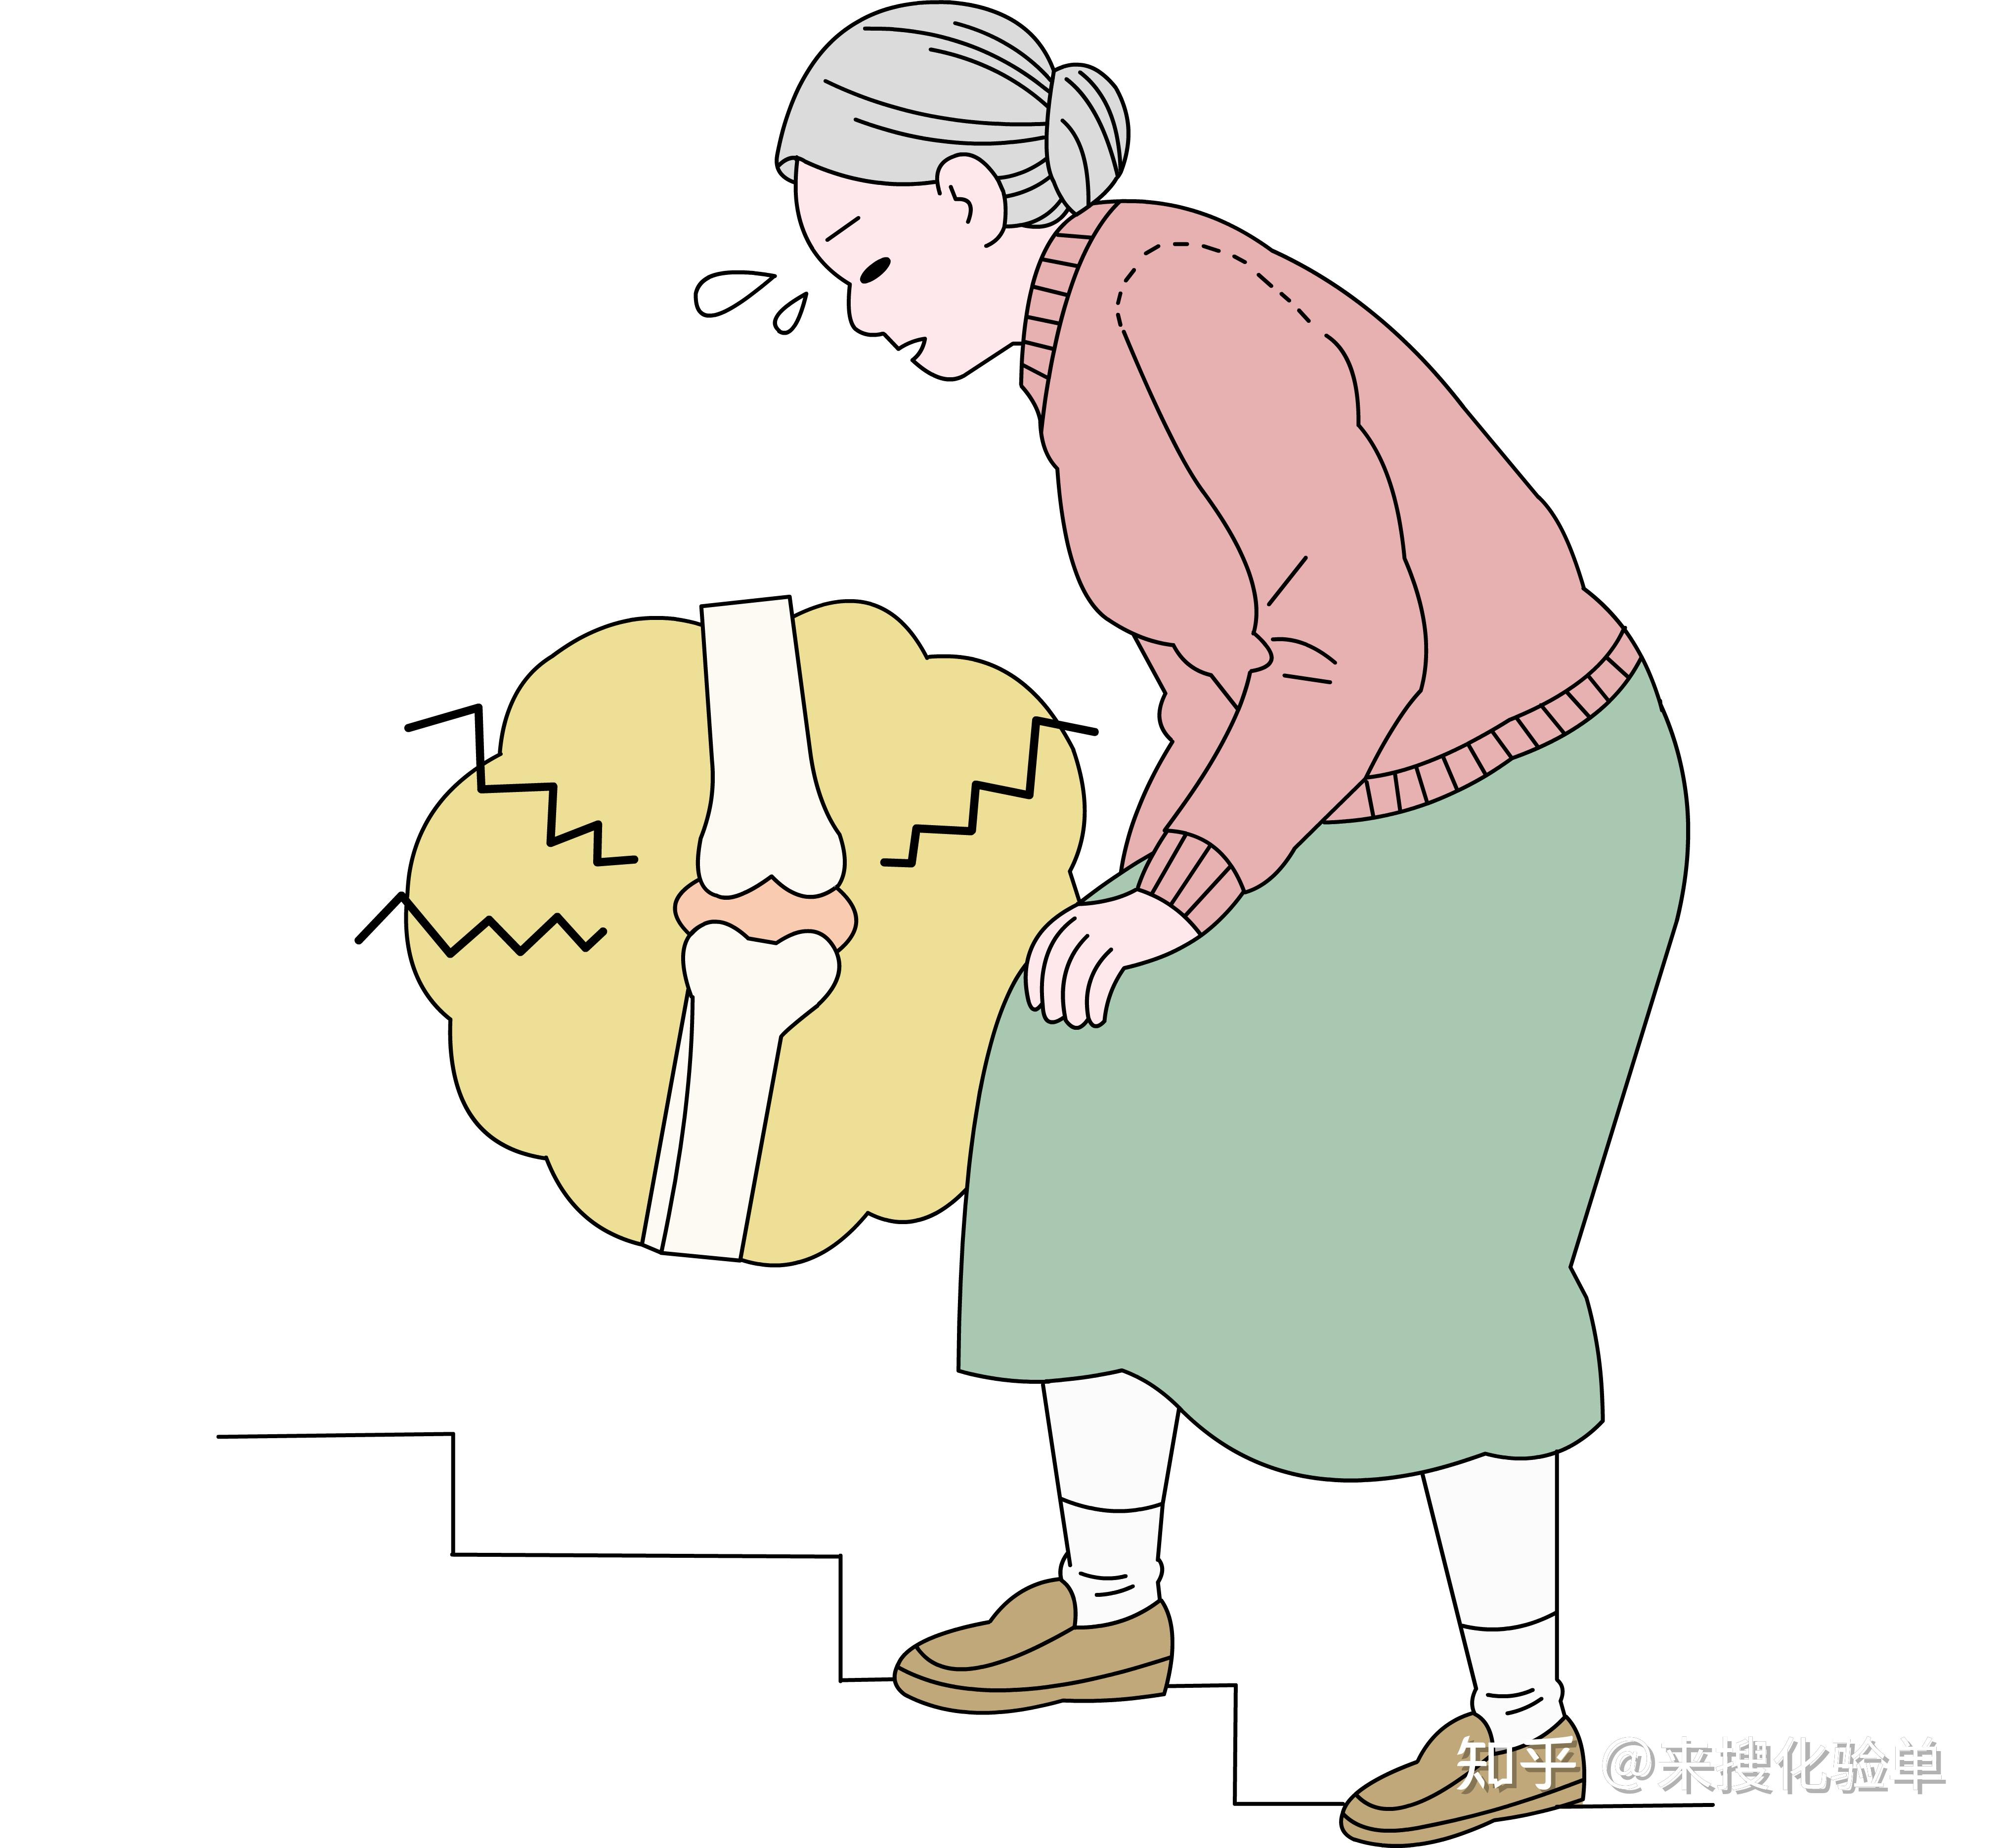 正确做法:老年人,肥胖者,膝盖有损伤者应该减少爬楼梯,如果要爬楼梯要